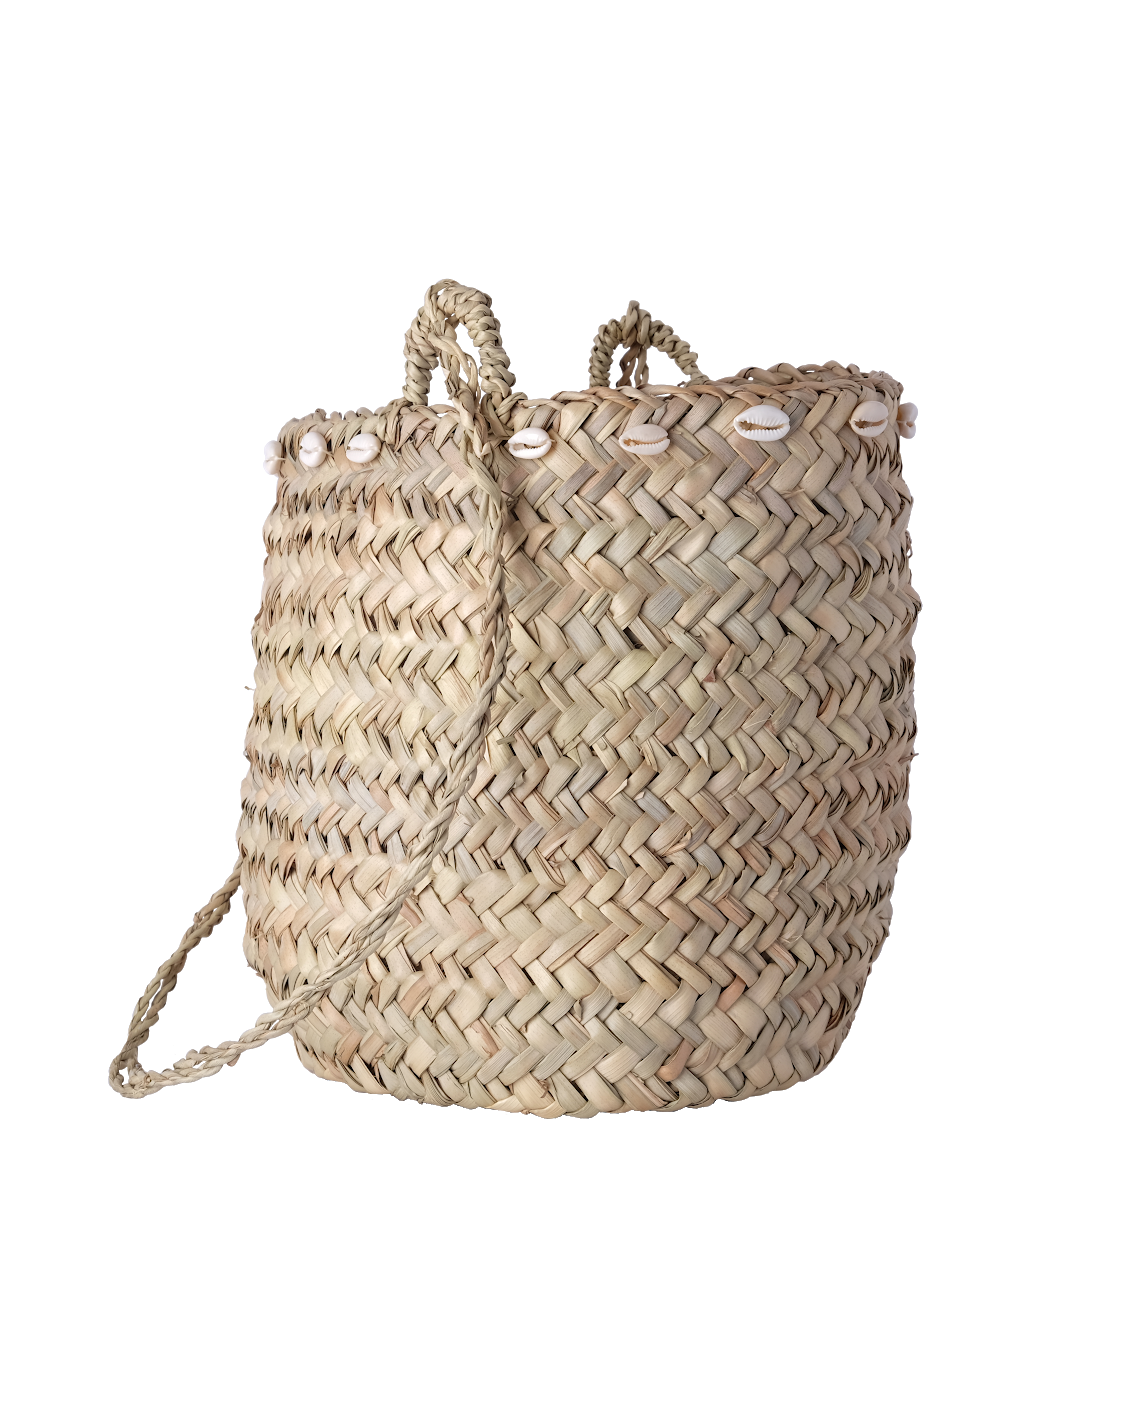 Basket Bag Background PNG Image